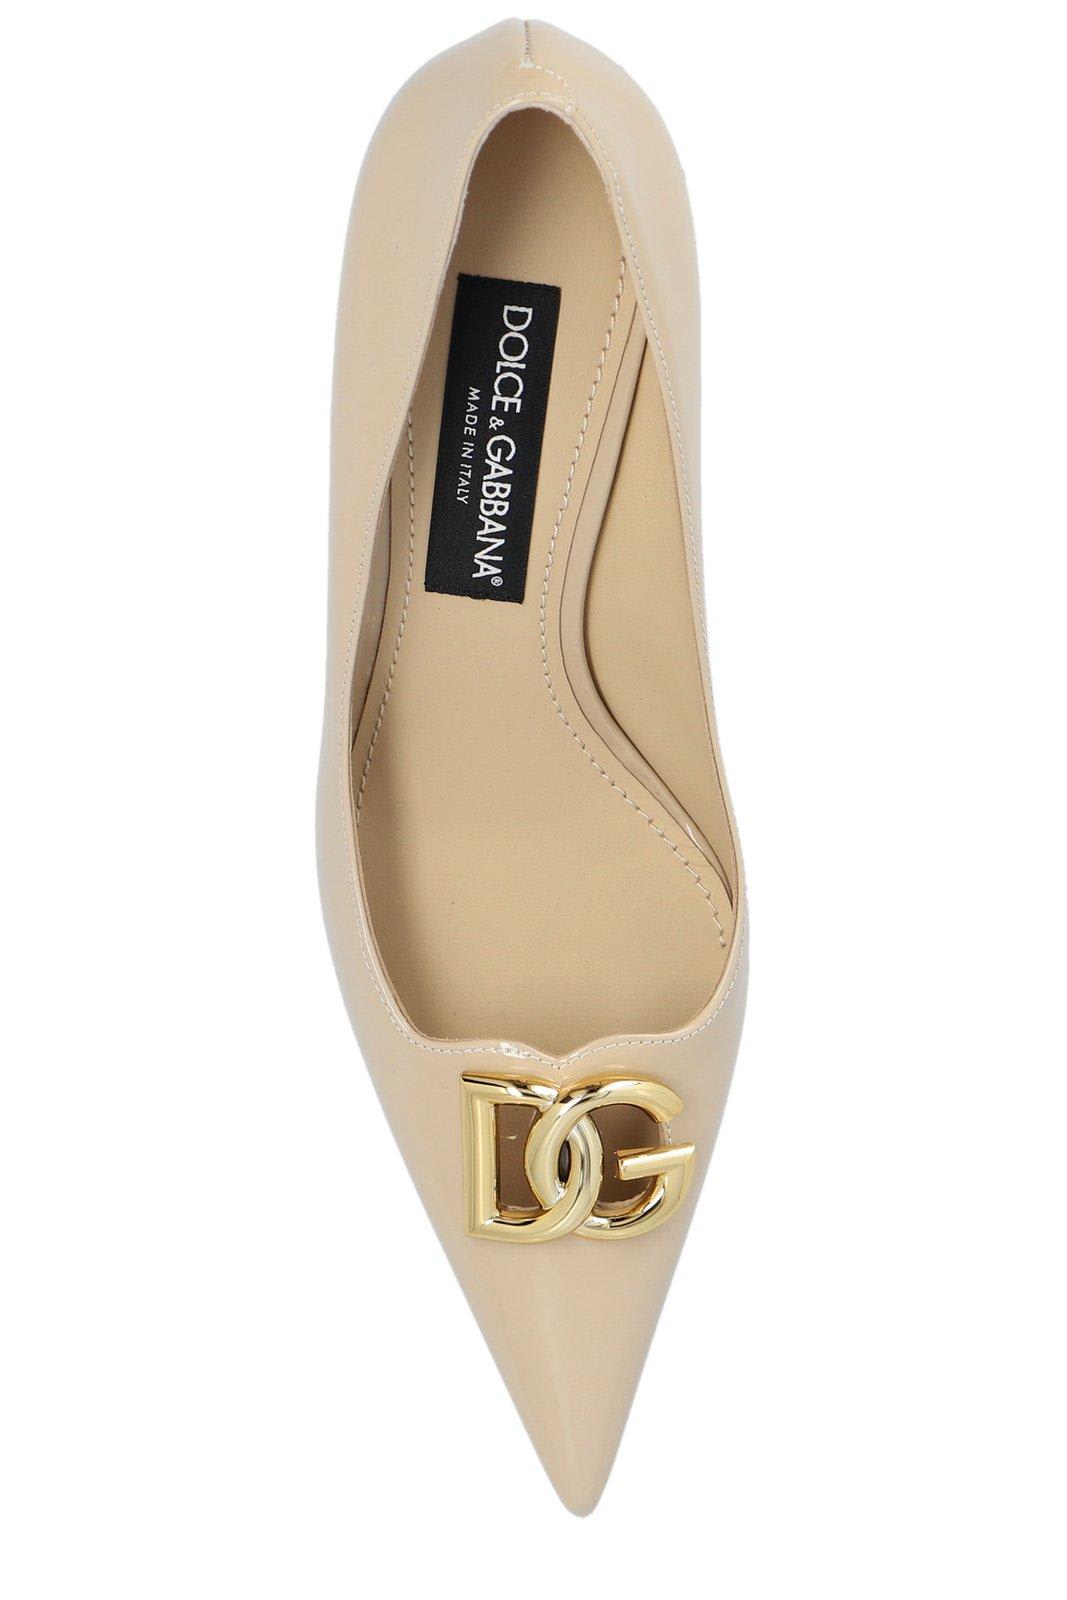 Shop Dolce & Gabbana Dg Plaque Pointed Toe Pumps